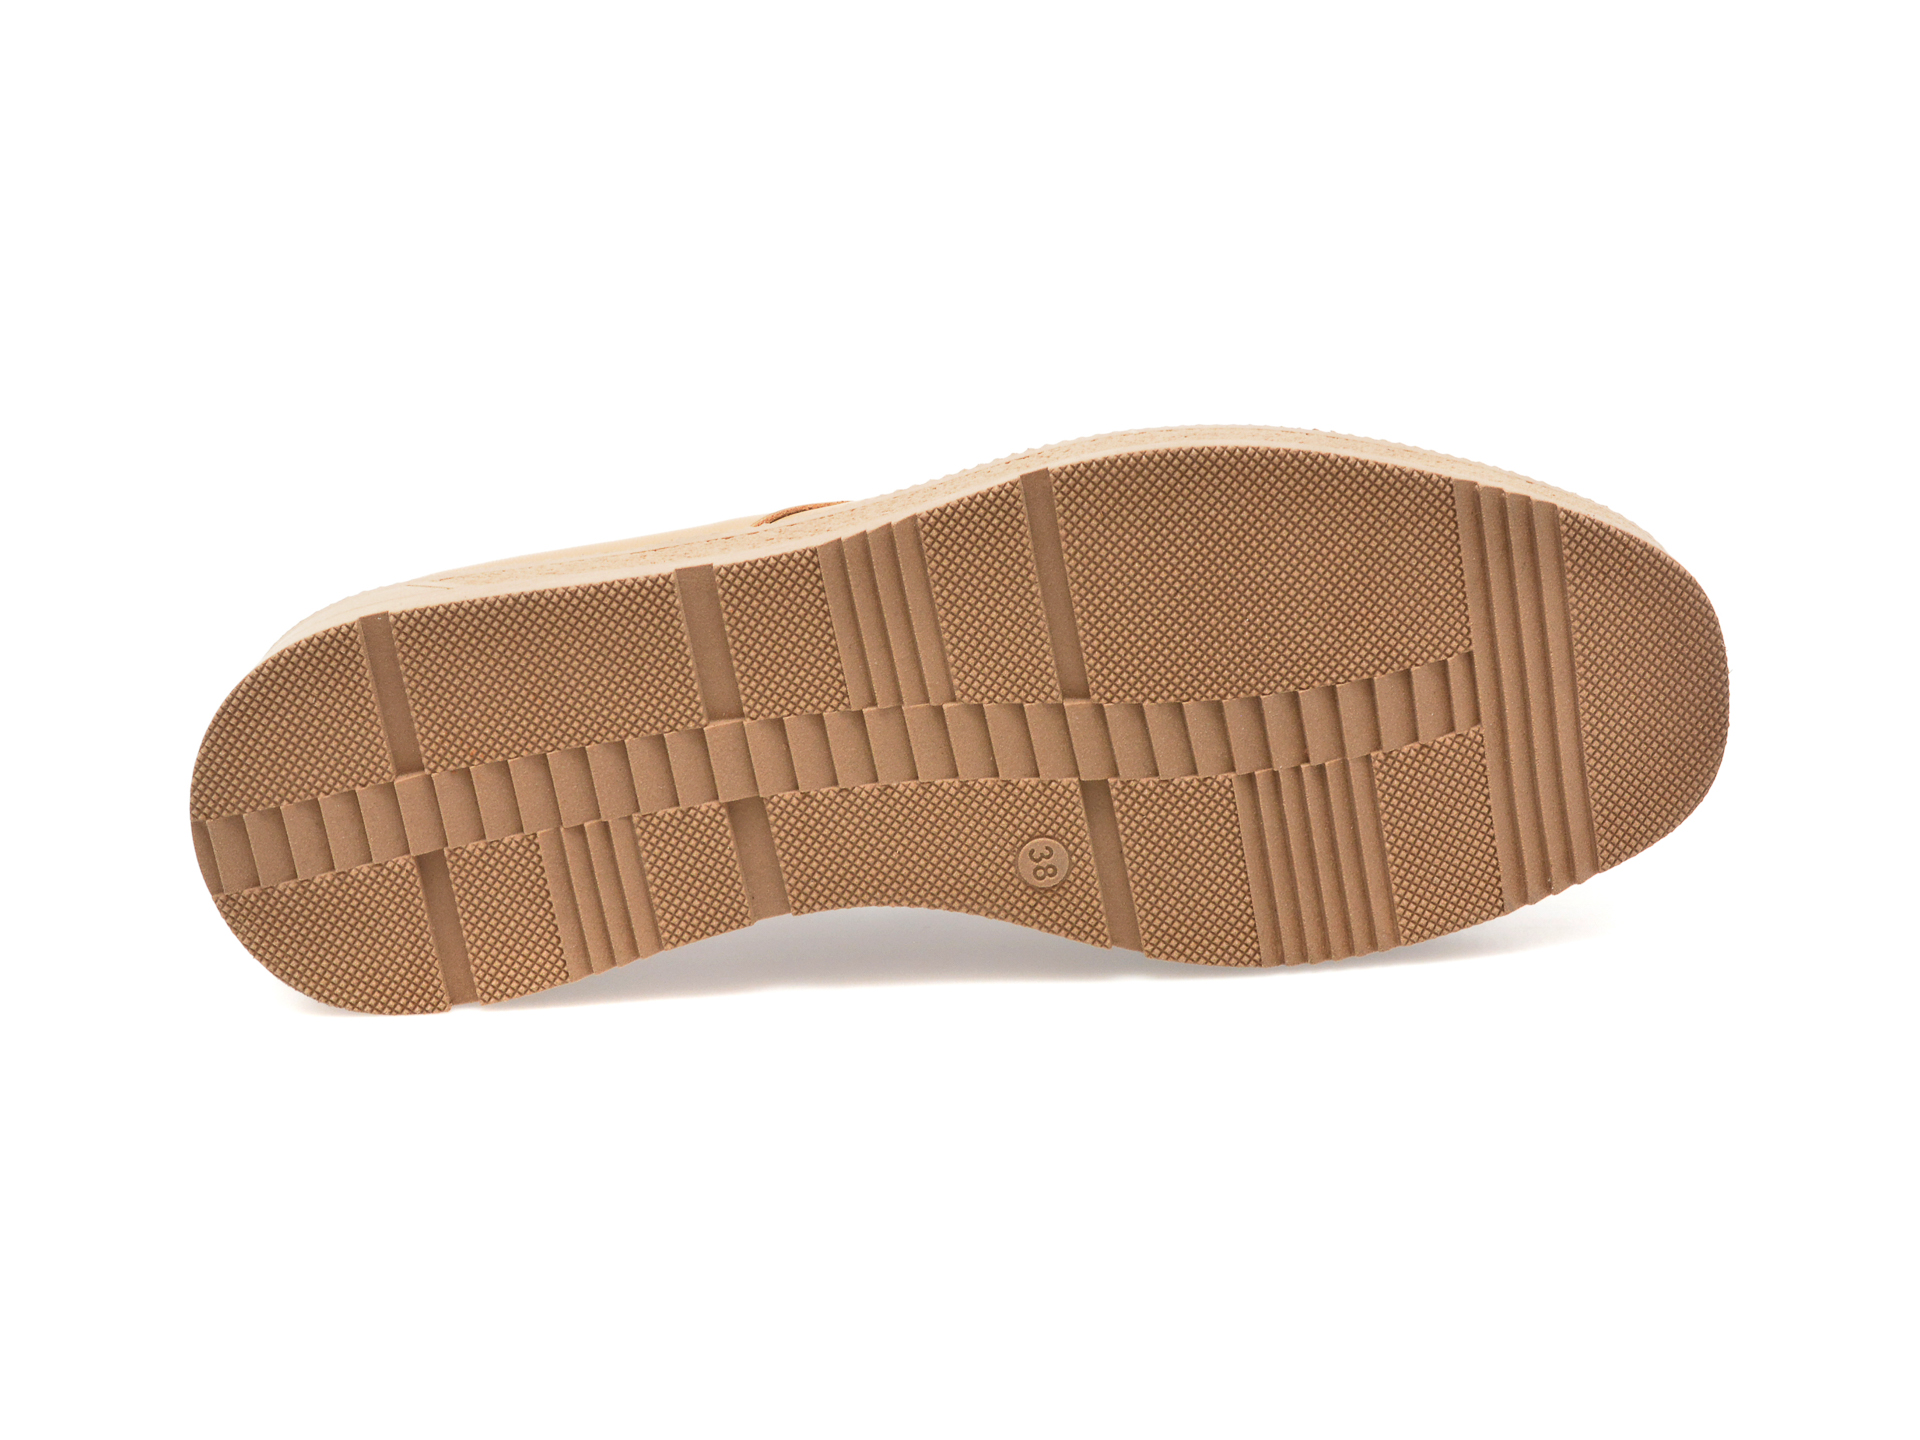 Pantofi GRYXX maro, 23912, din piele naturala